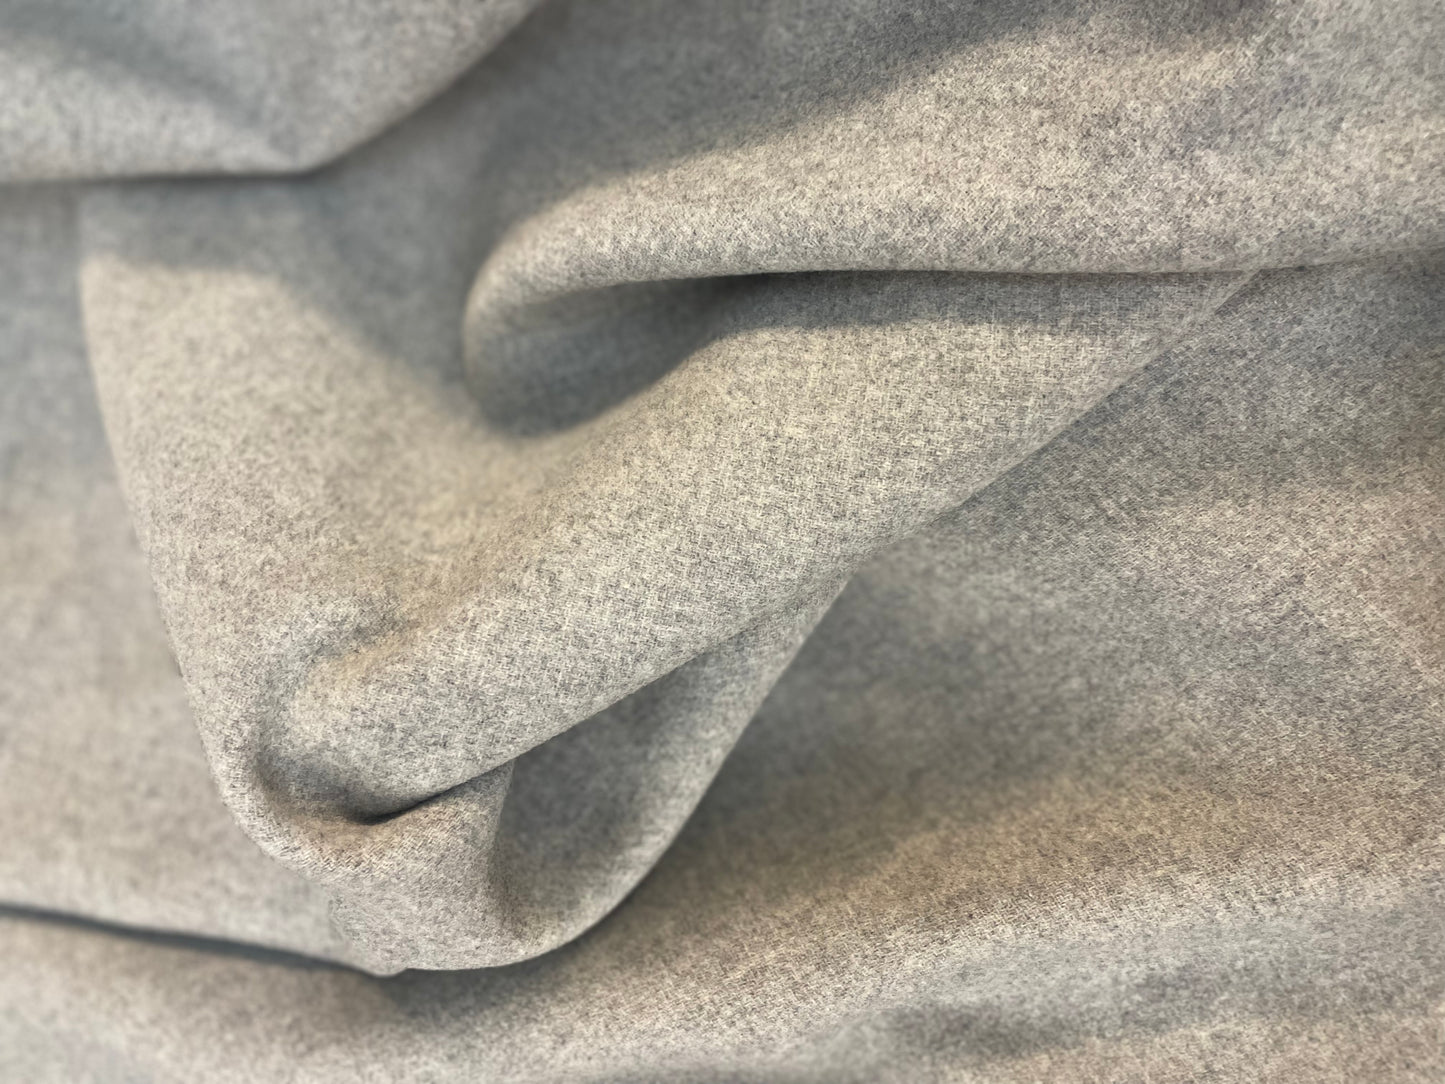 Italian Double Face Melton Wool - Heathered Medium & Light Gray